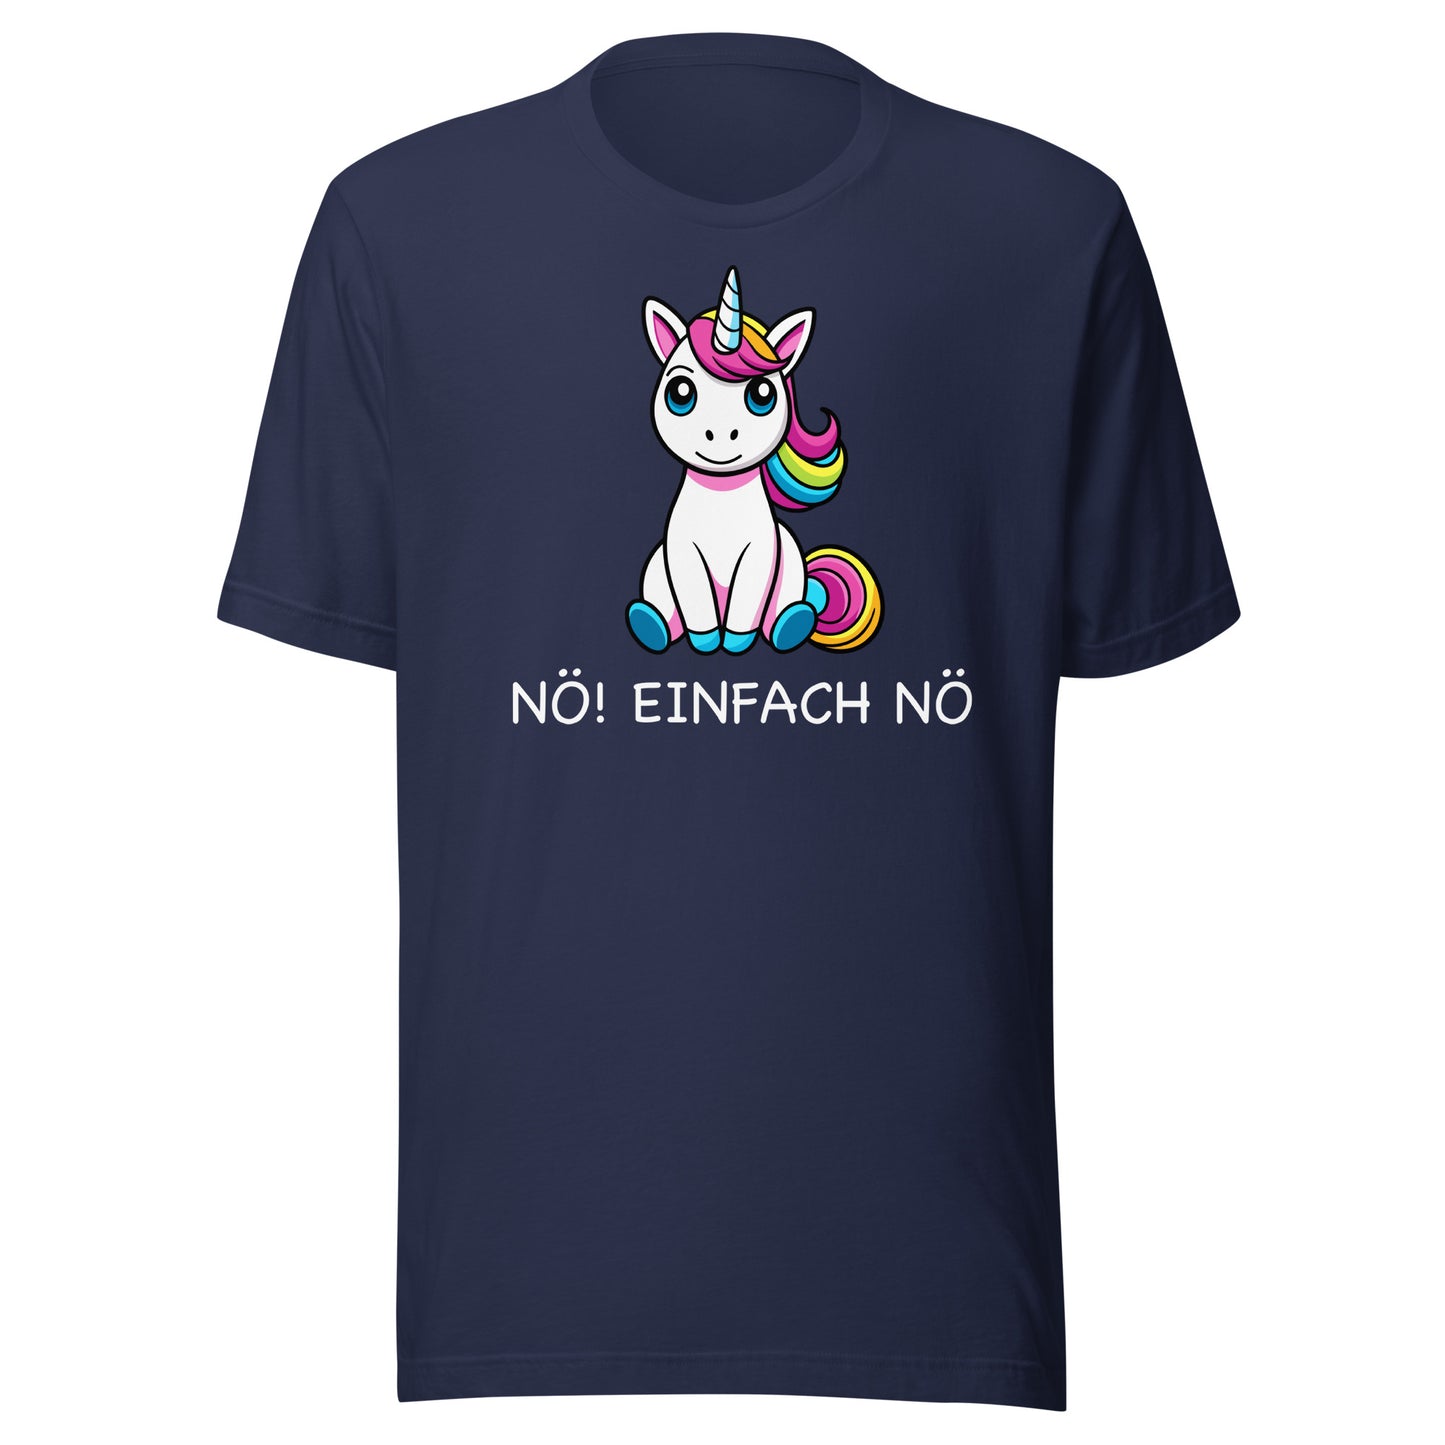 NO! JUST NO - printed T-shirt 